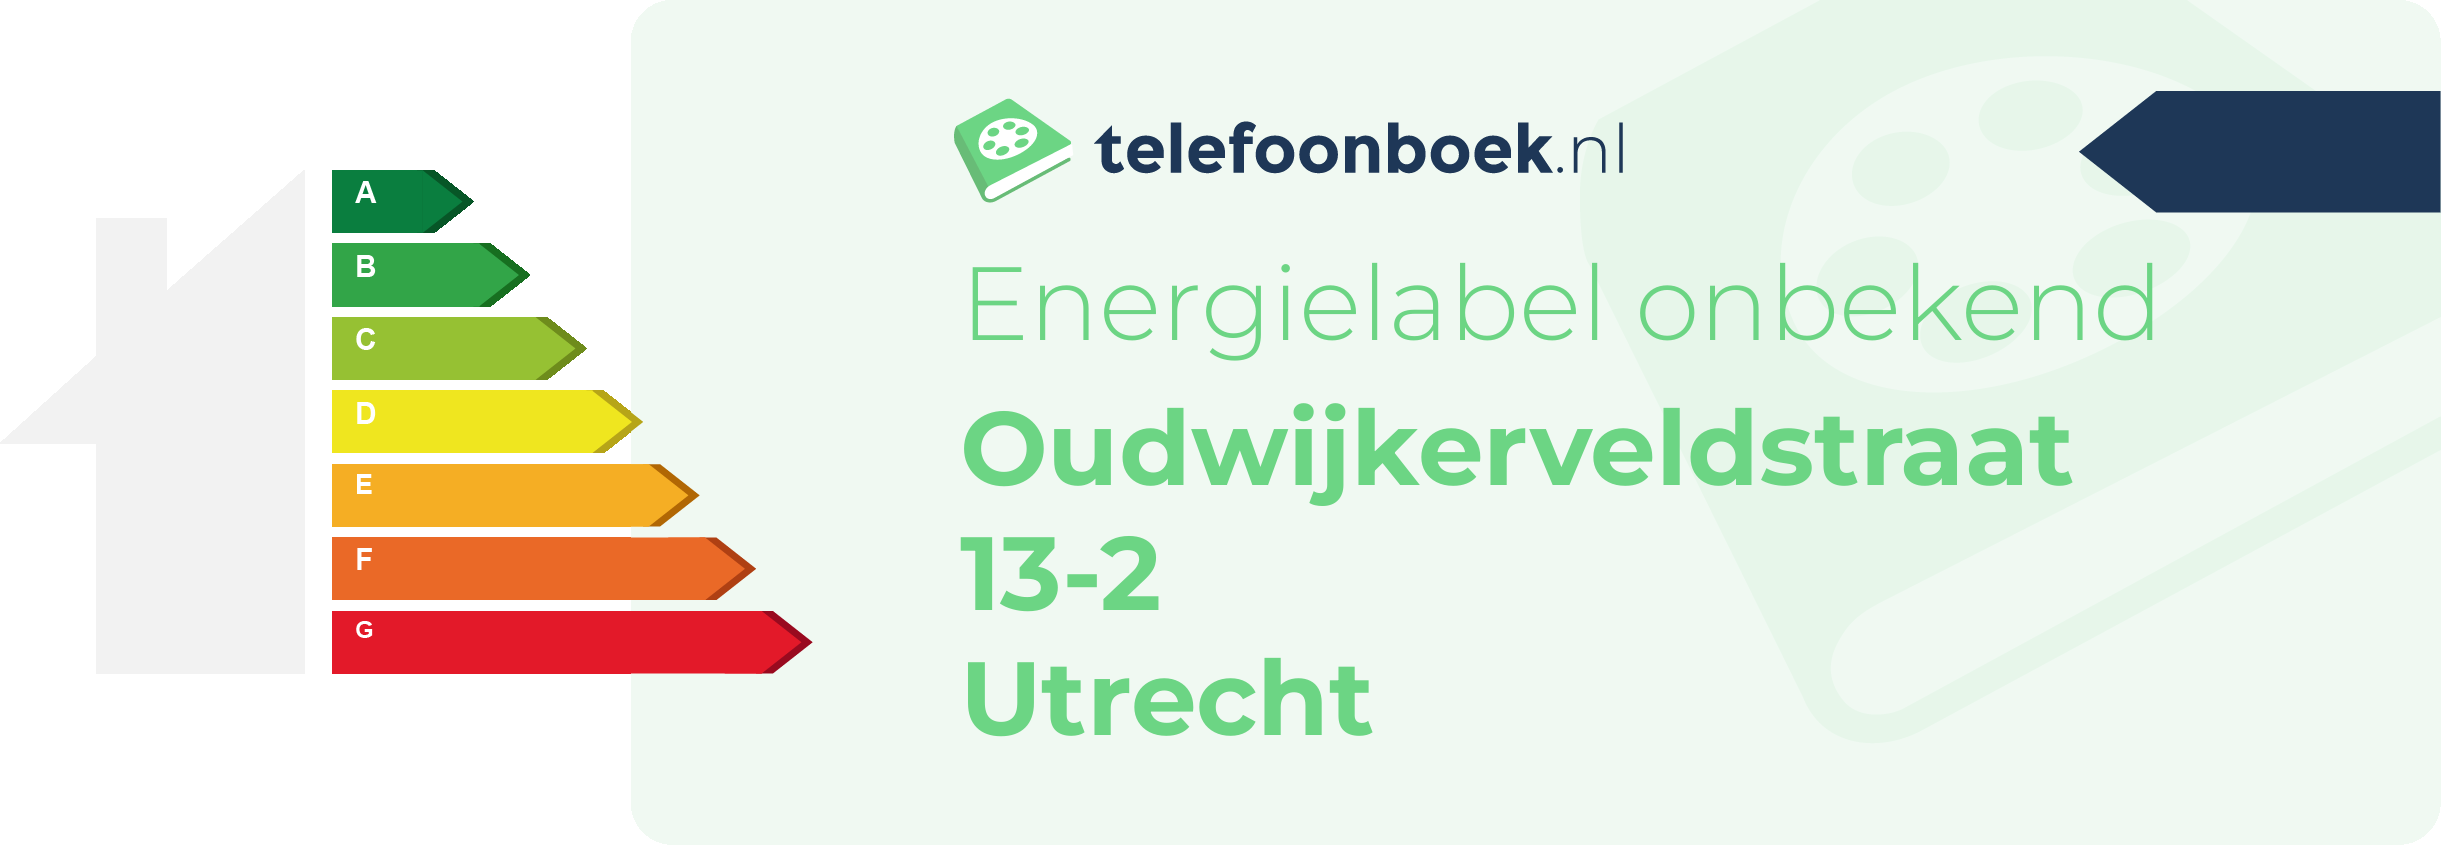 Energielabel Oudwijkerveldstraat 13-2 Utrecht